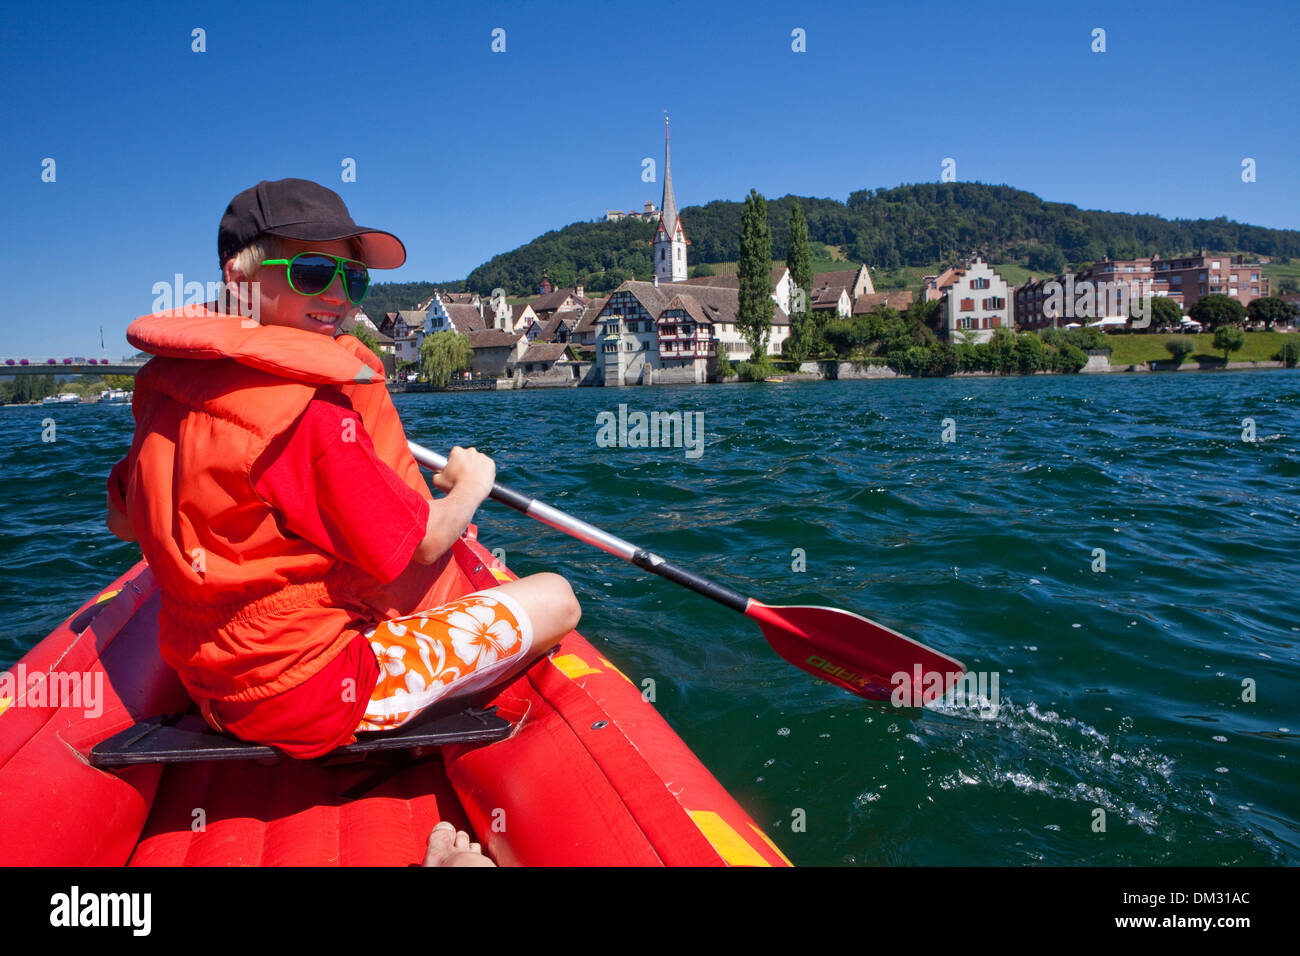 Suiza Europa cantón Schaffhausen SH Stein am Rhein barco barco agua chalupas sport boat canoa balsa salvavidas balsa de goma Foto de stock